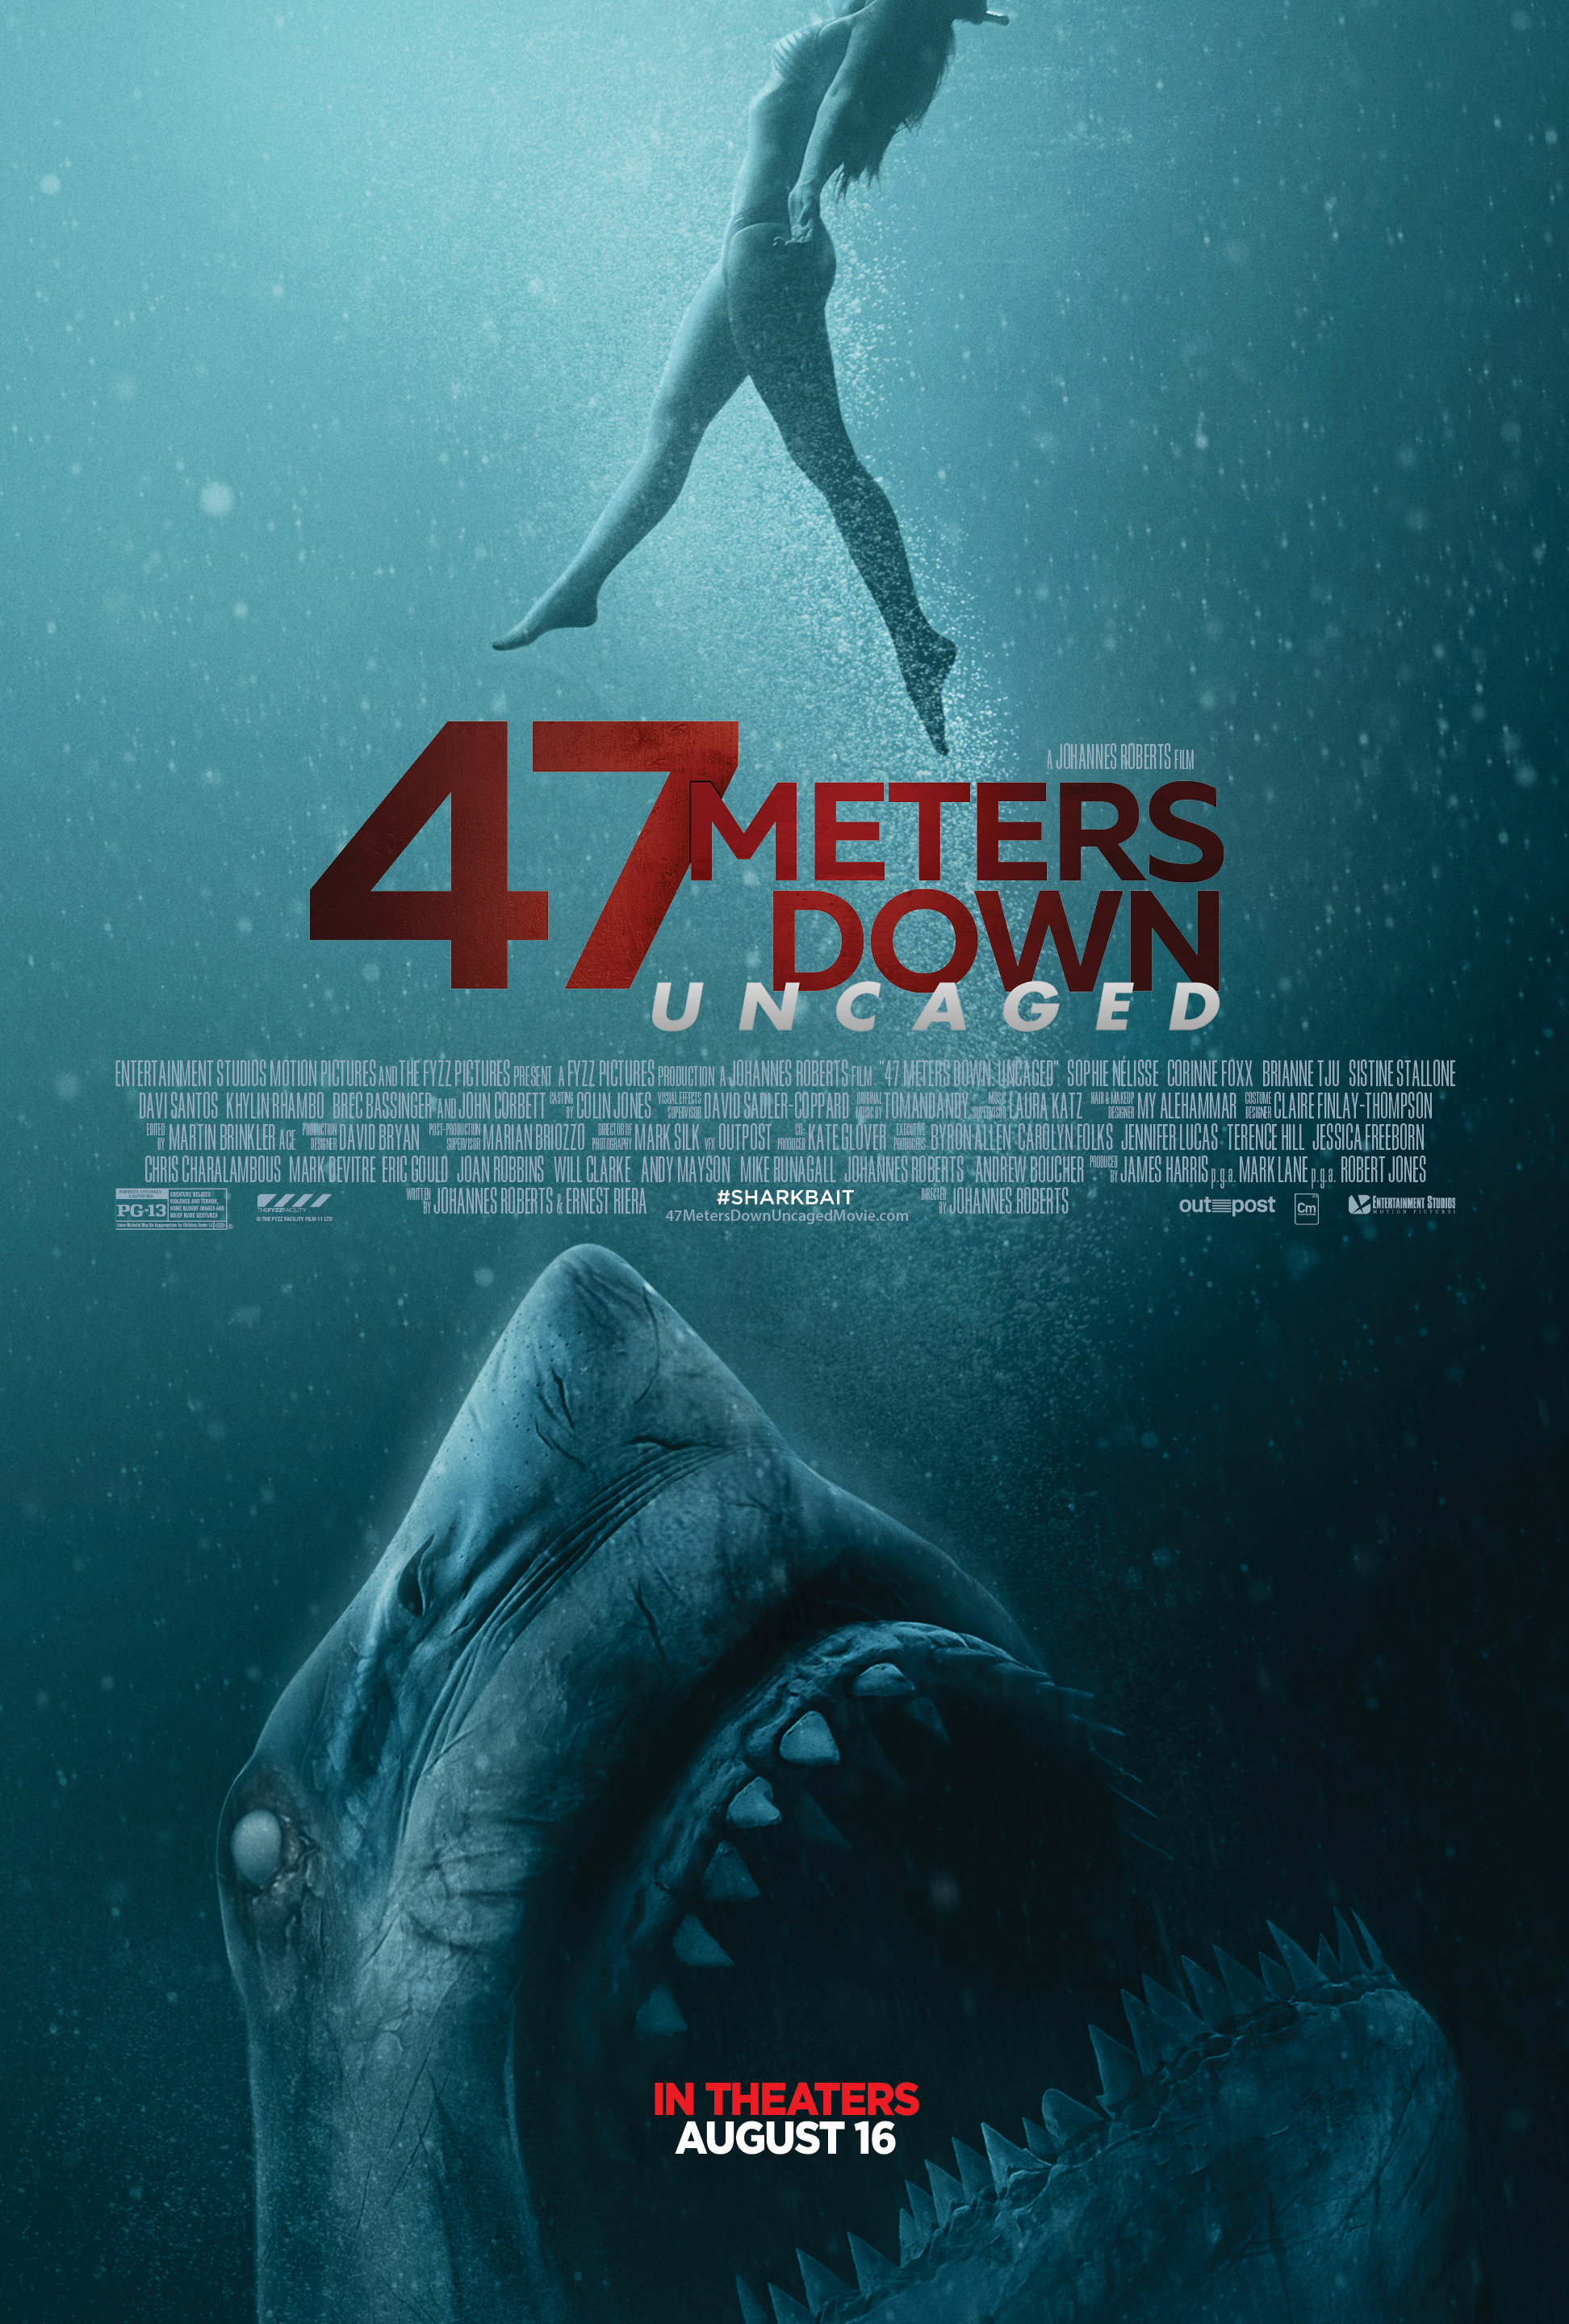 47 meters down synopsis